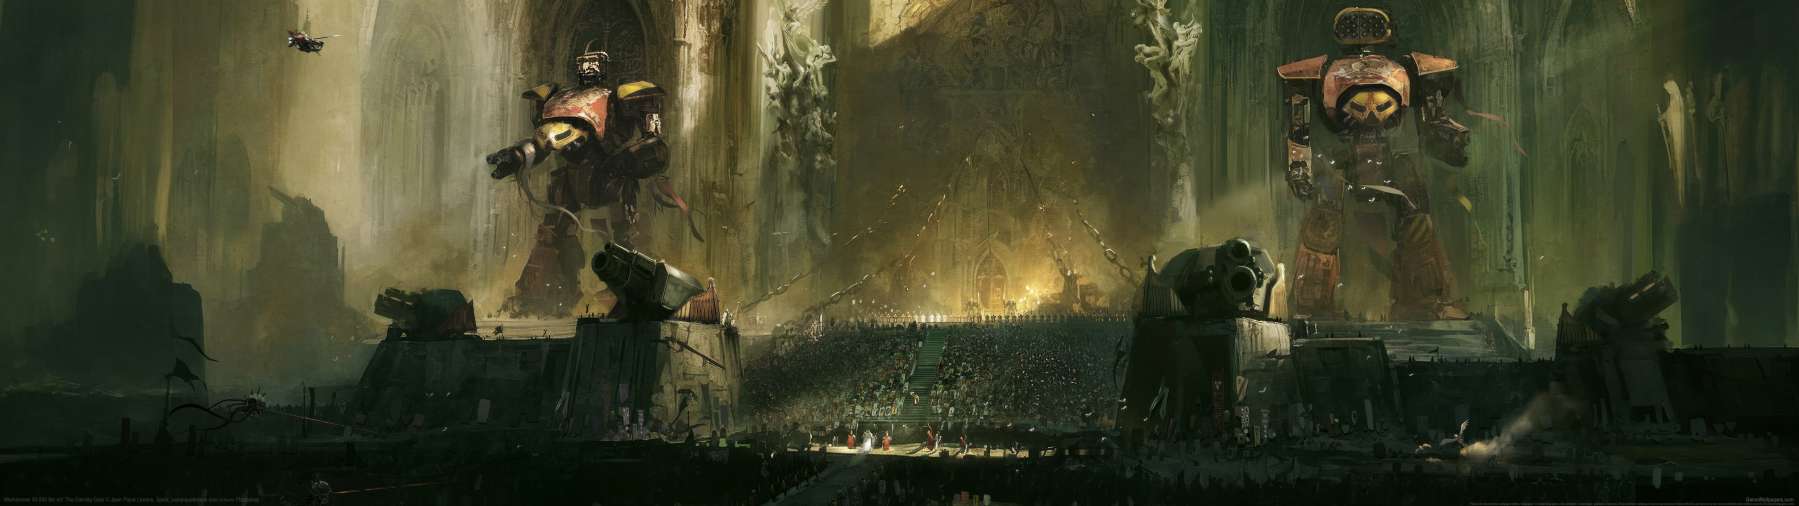 Warhammer 40,000 fan art fond d'cran